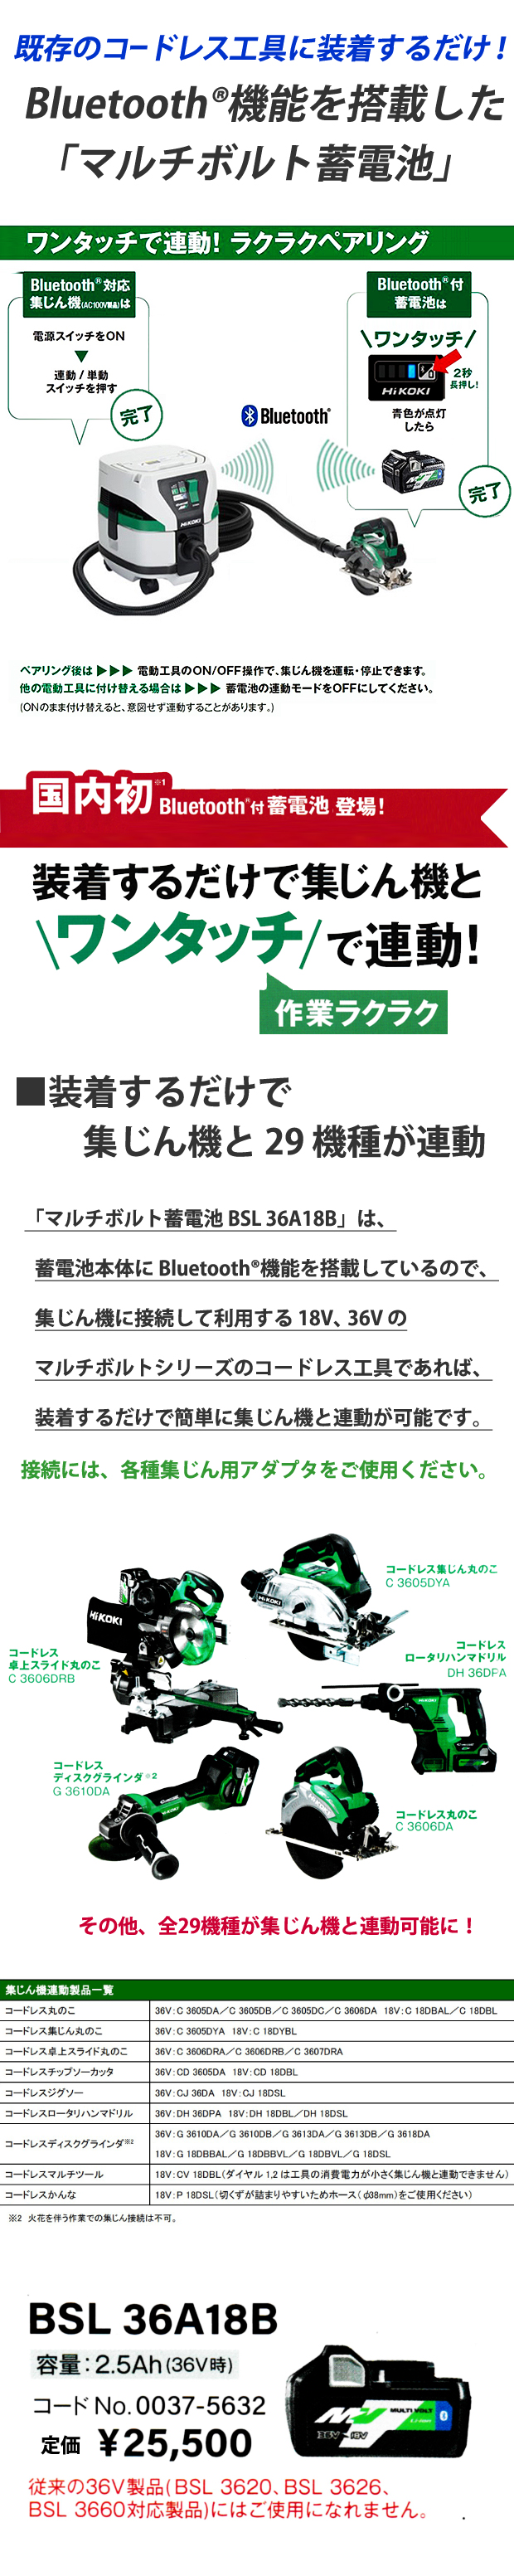 購入可能商品 HIKOKI Bluetooth マルチボルトバッテリー　BSL36A18 工具/メンテナンス